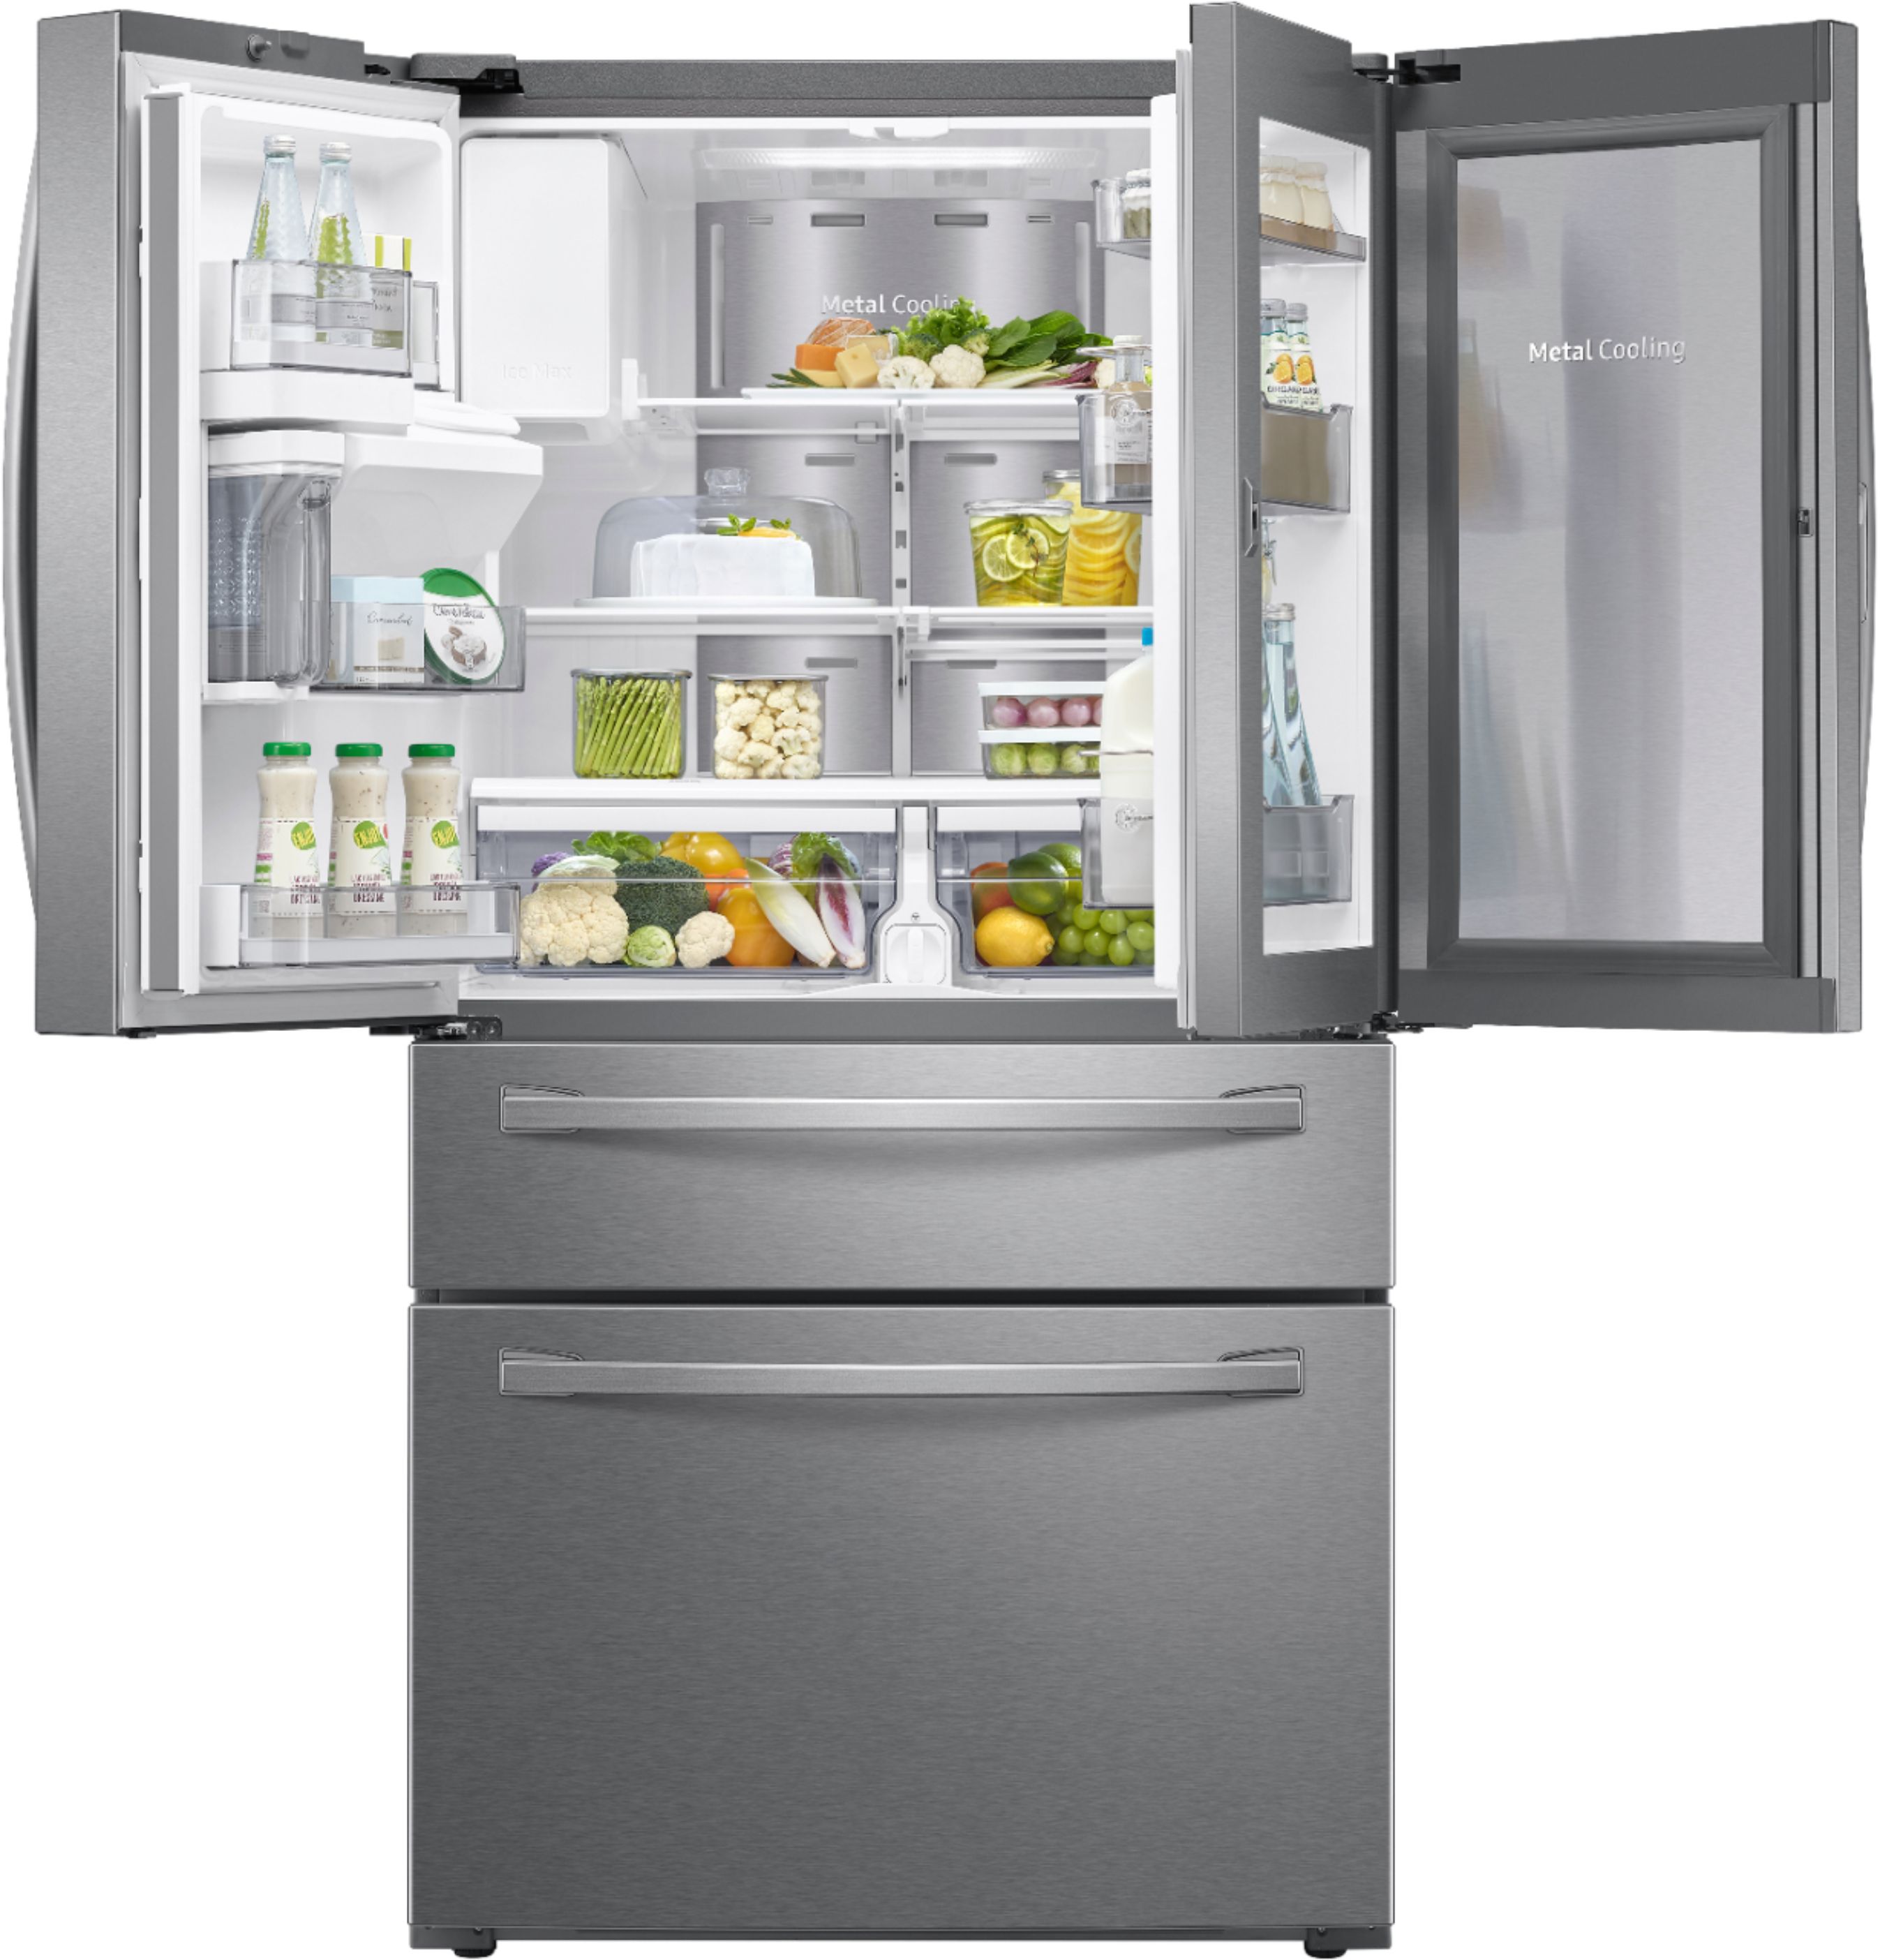 Samsung - 27.8 cu. ft. 4-Door French Door Refrigerator with Food ...